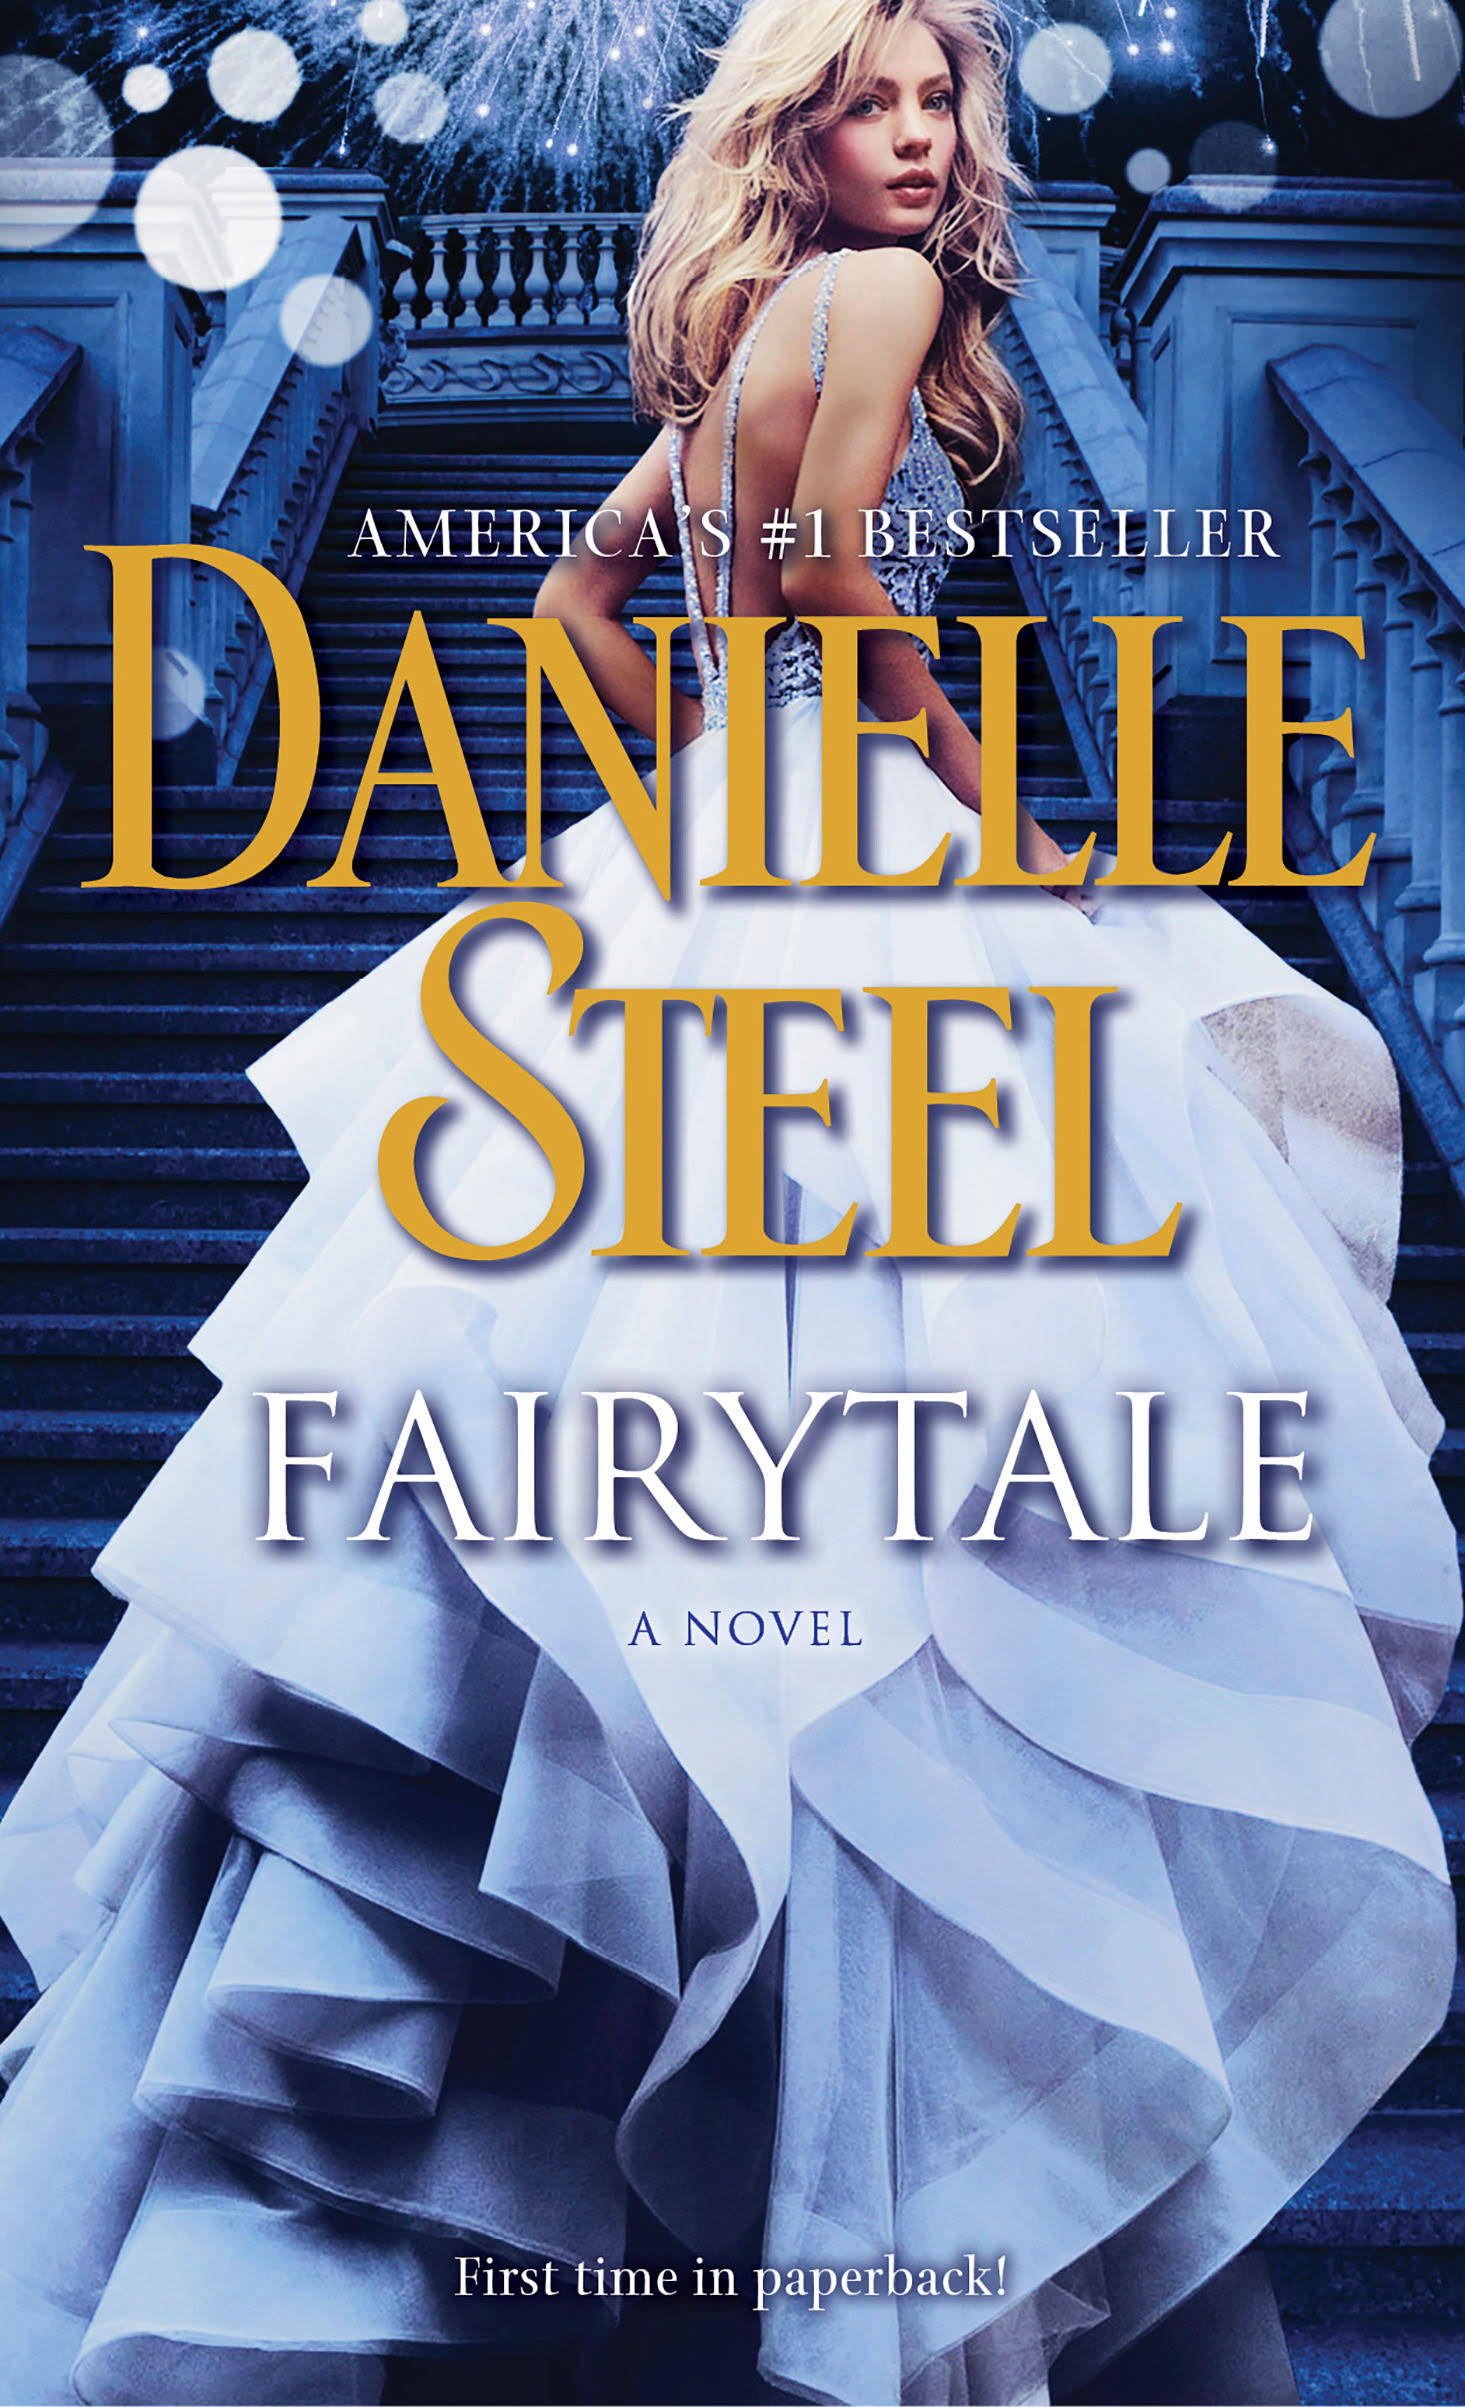 Fairytale: A Novel - Danielle Steel